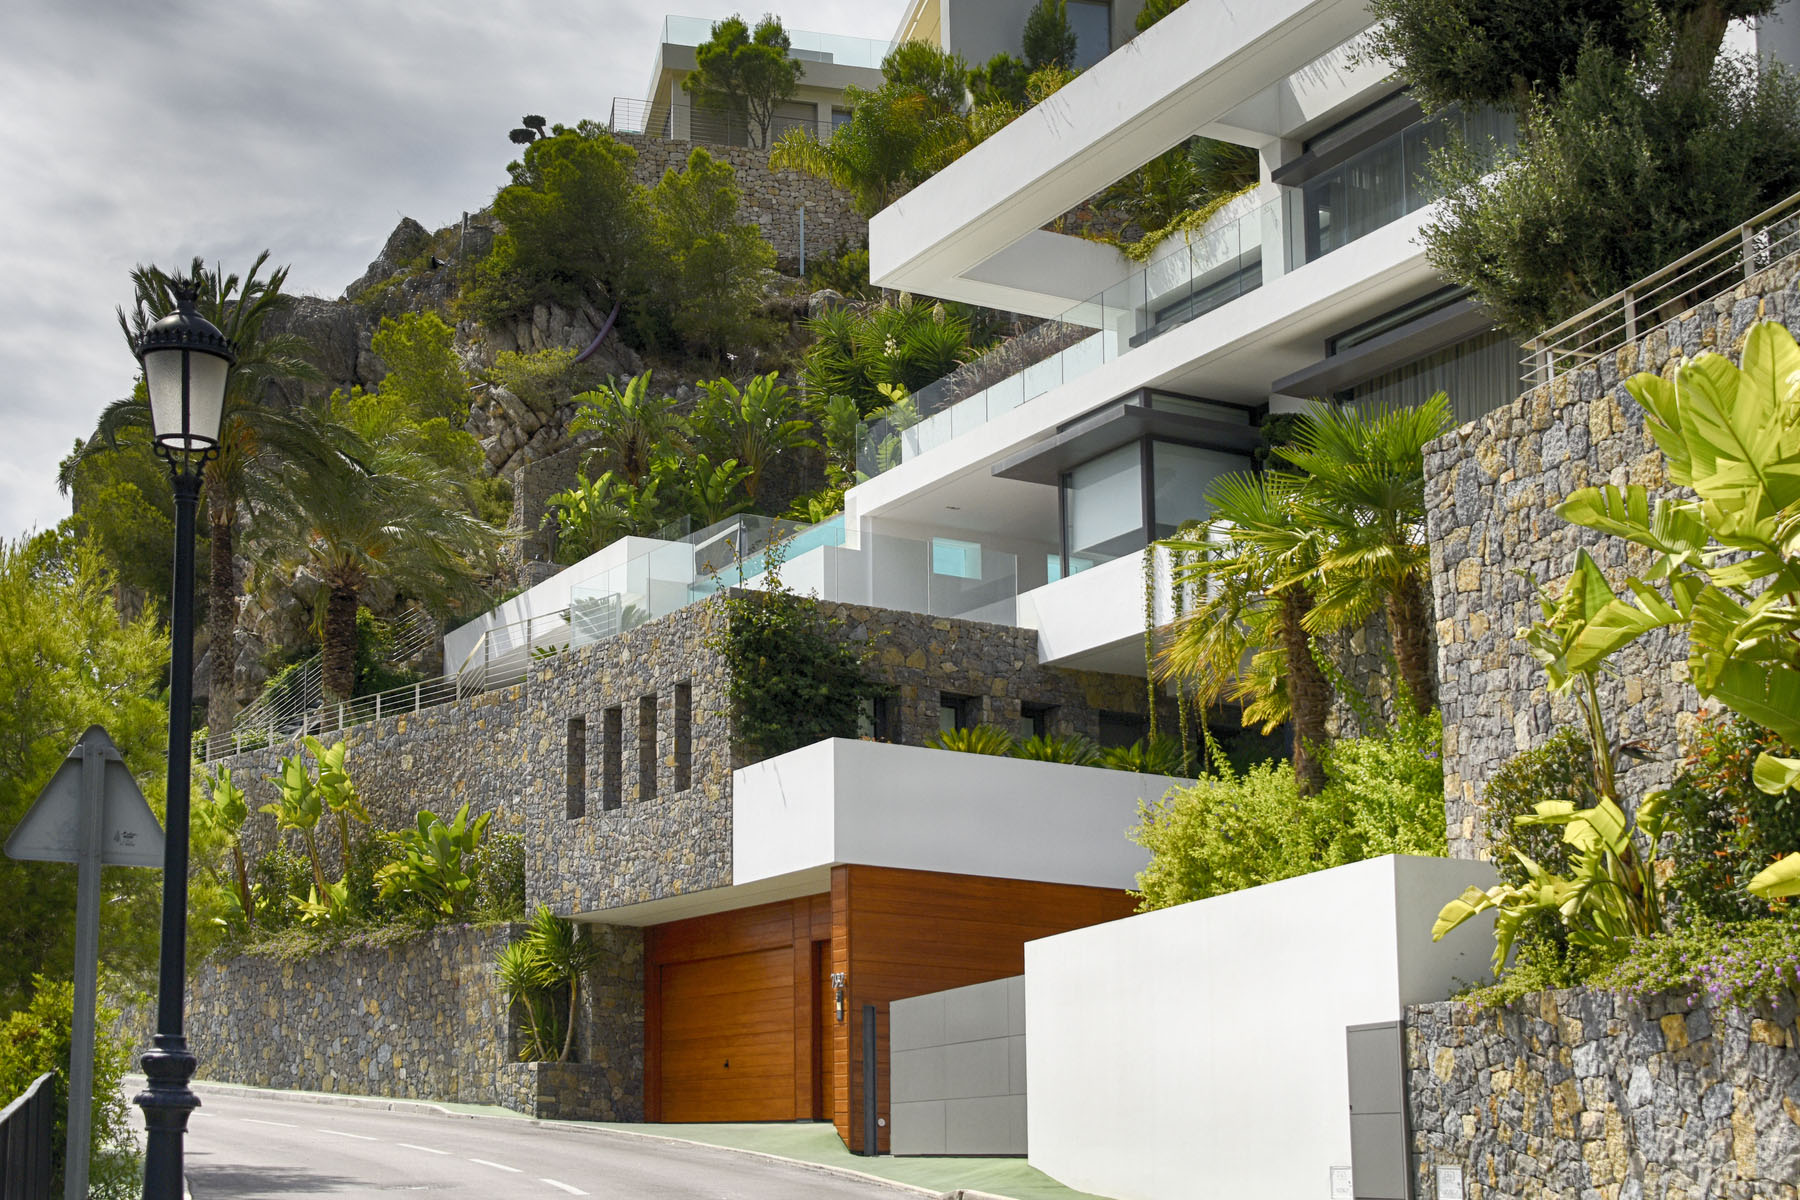 hillside villas in Spain